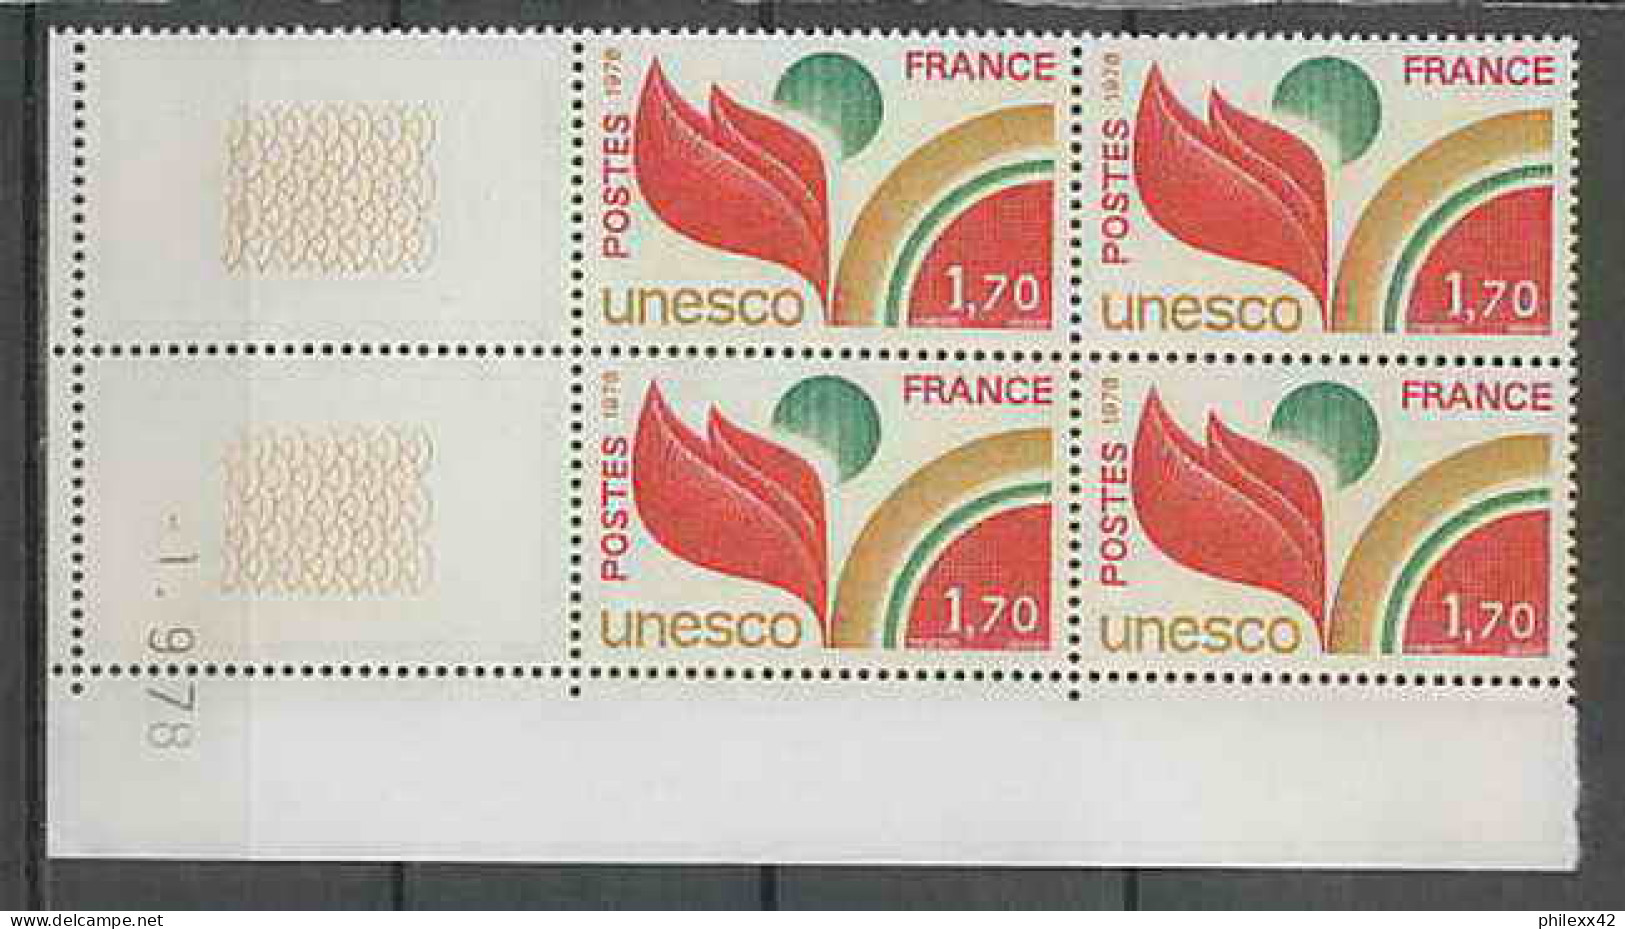 1301 - France - Coin Daté TB Neuf ** Service Unesco N°57 Date 1/9/1976 Sans Trait  - Servicio